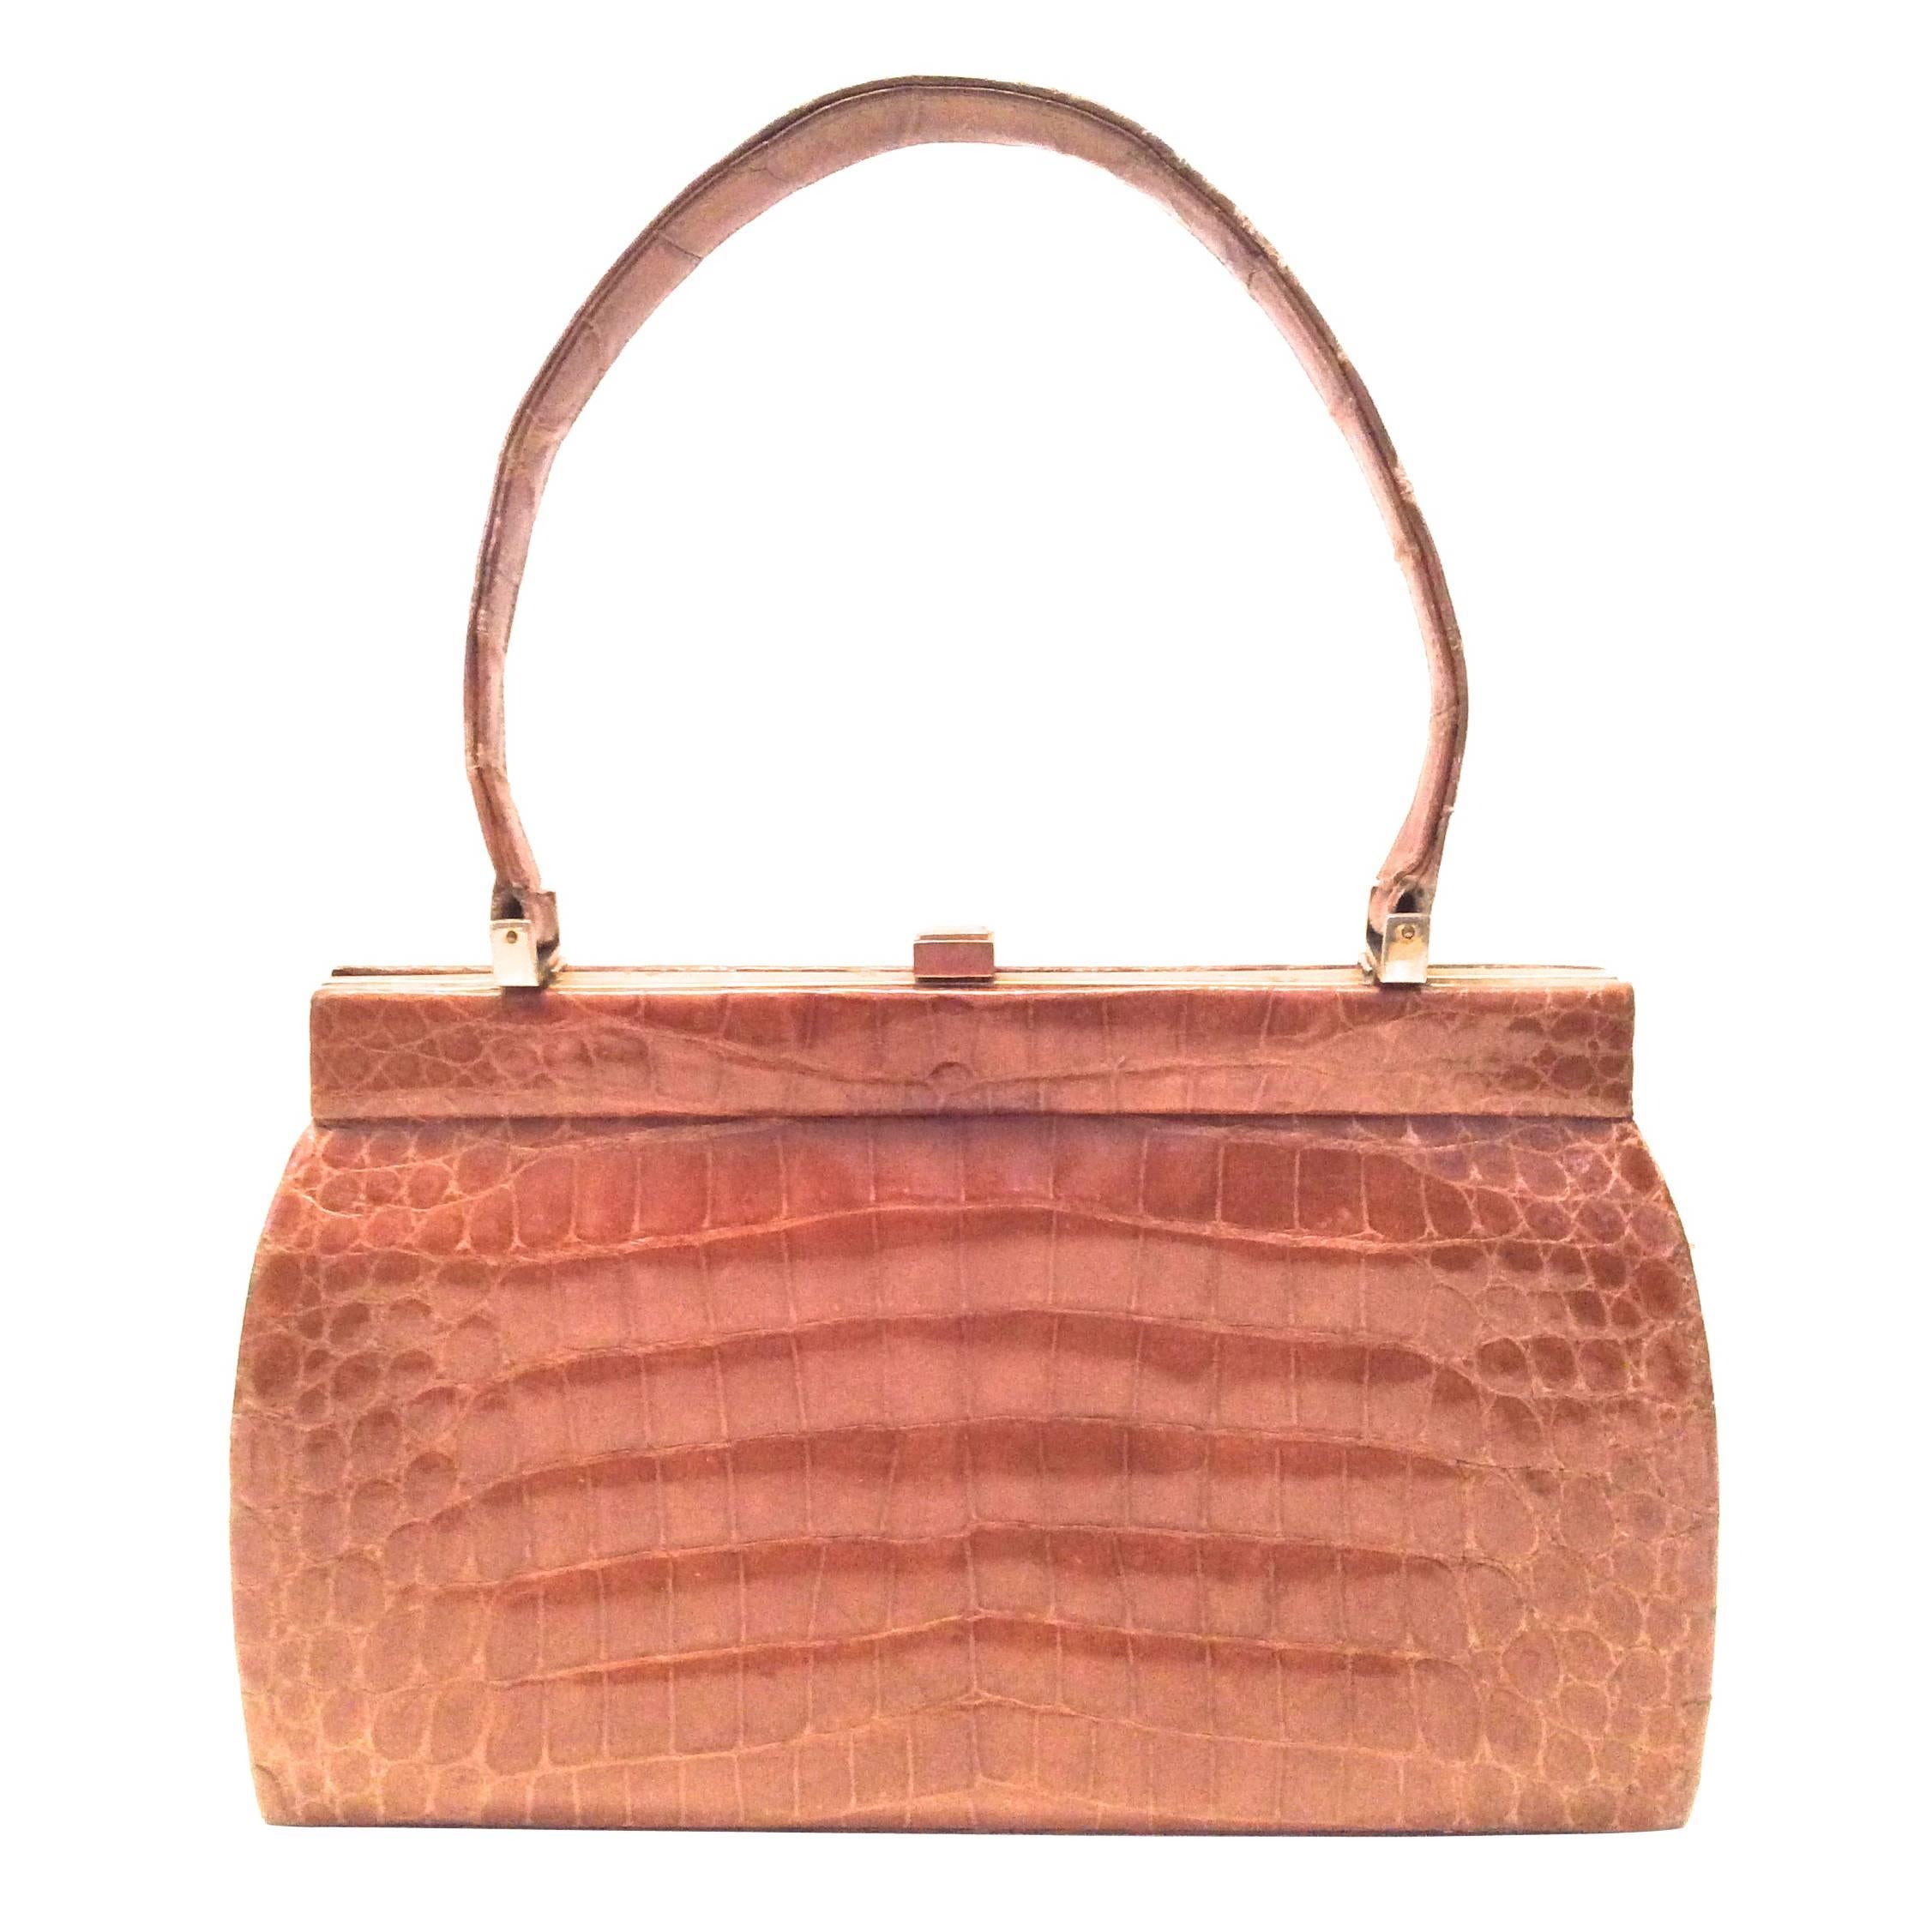 Magnificent Vintage Alligator Handbag - Tan / Light Brown For Sale